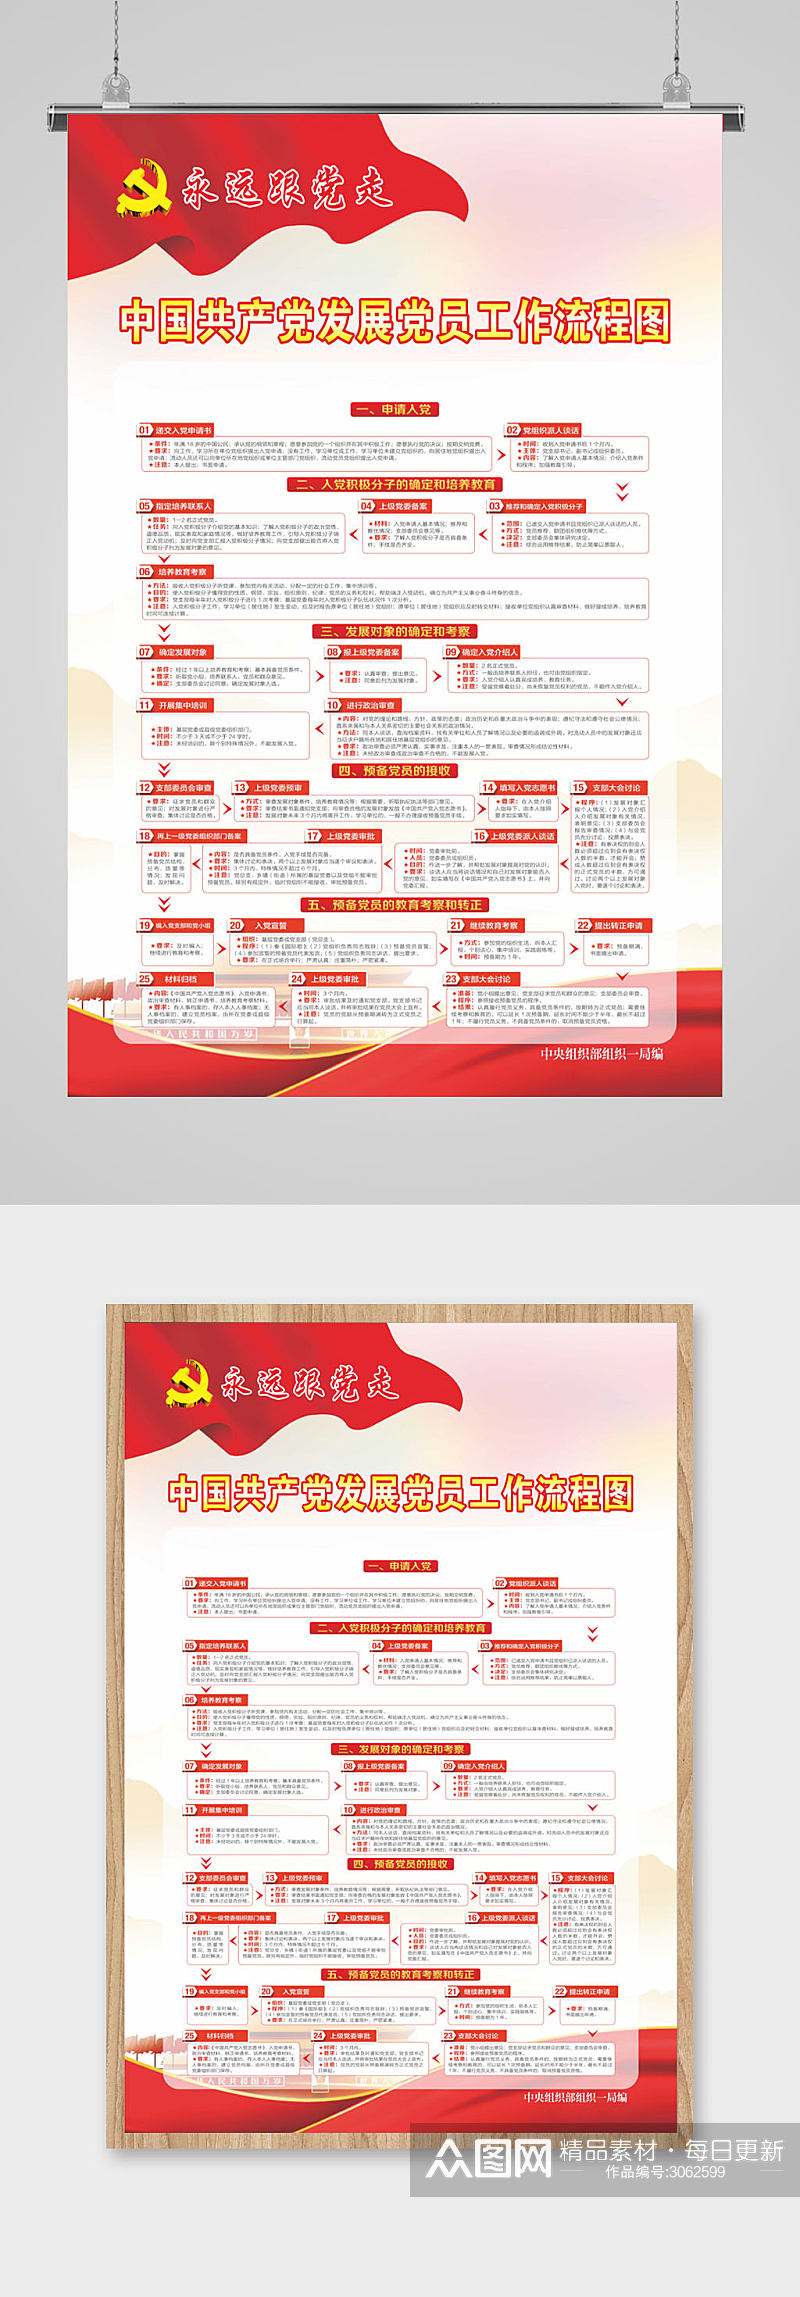 中国共产党发展党员工作流程图素材